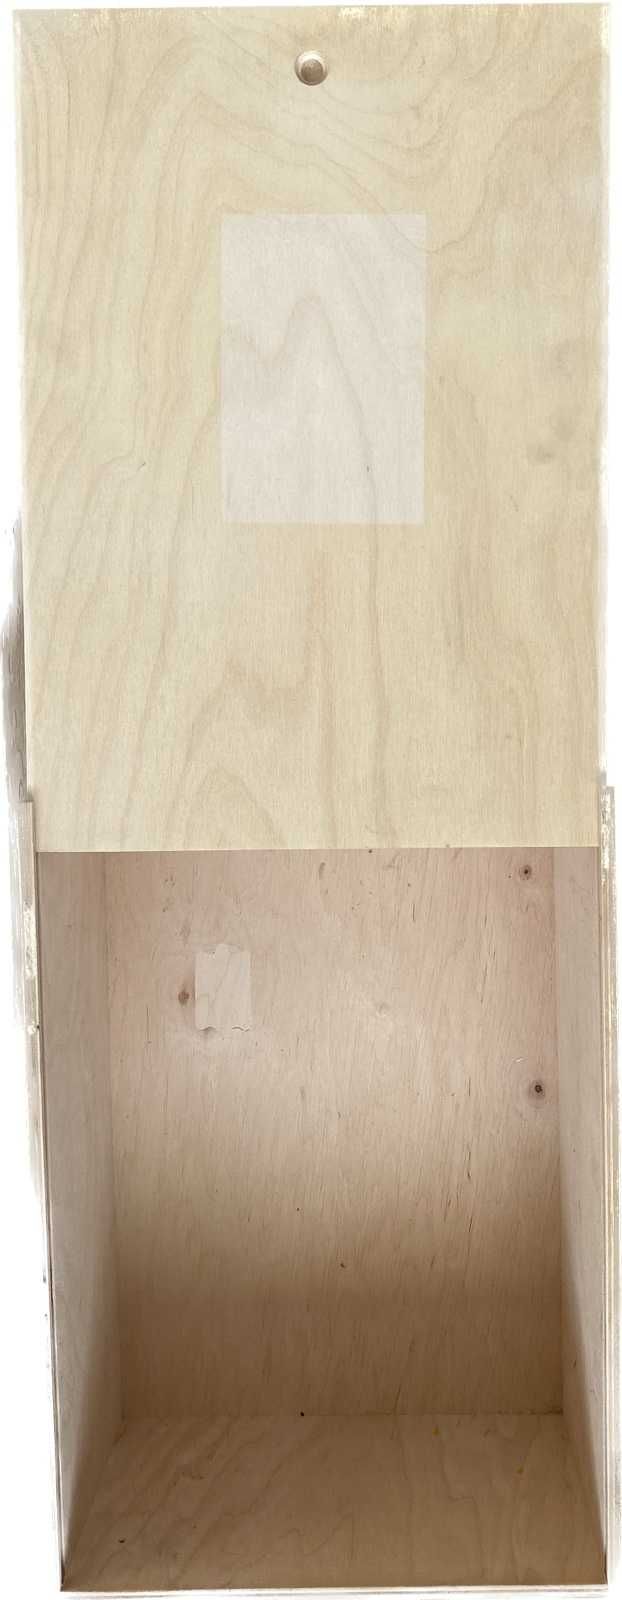 Дерев'яний ящик пенал з ручкою: дов-41,5 шир-29,5 вис-17см, т стін 7мм